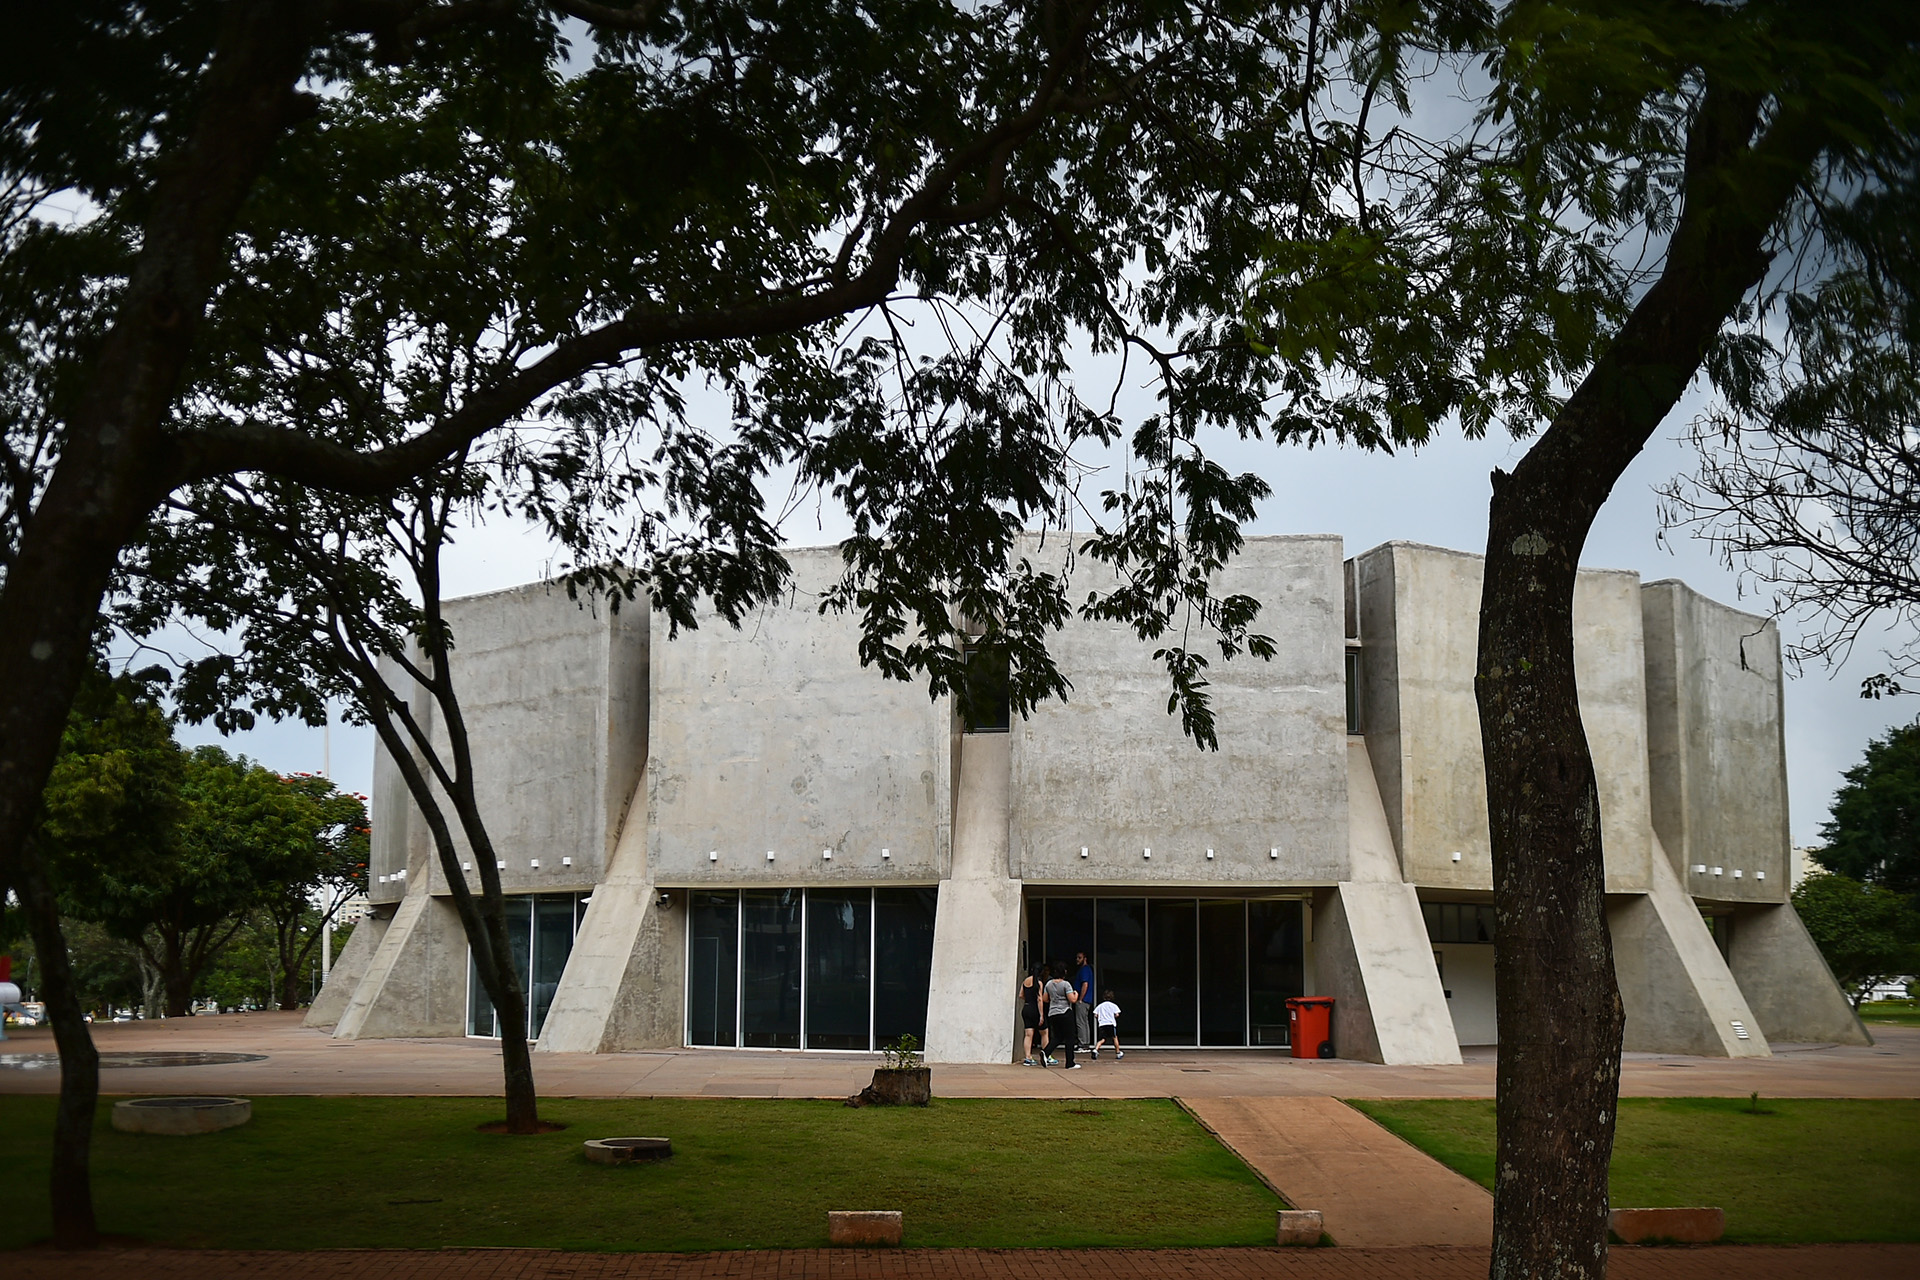 O Planetário de Brasília terá programação especial no sábado (16) voltada para os namorados. As sessões das 17h30 e das 18h30 da Cúpula Giordano Bruno, de cinema 180 graus, serão acompanhadas da Orquestra de Violoncelos da Escola de Música de Brasília.